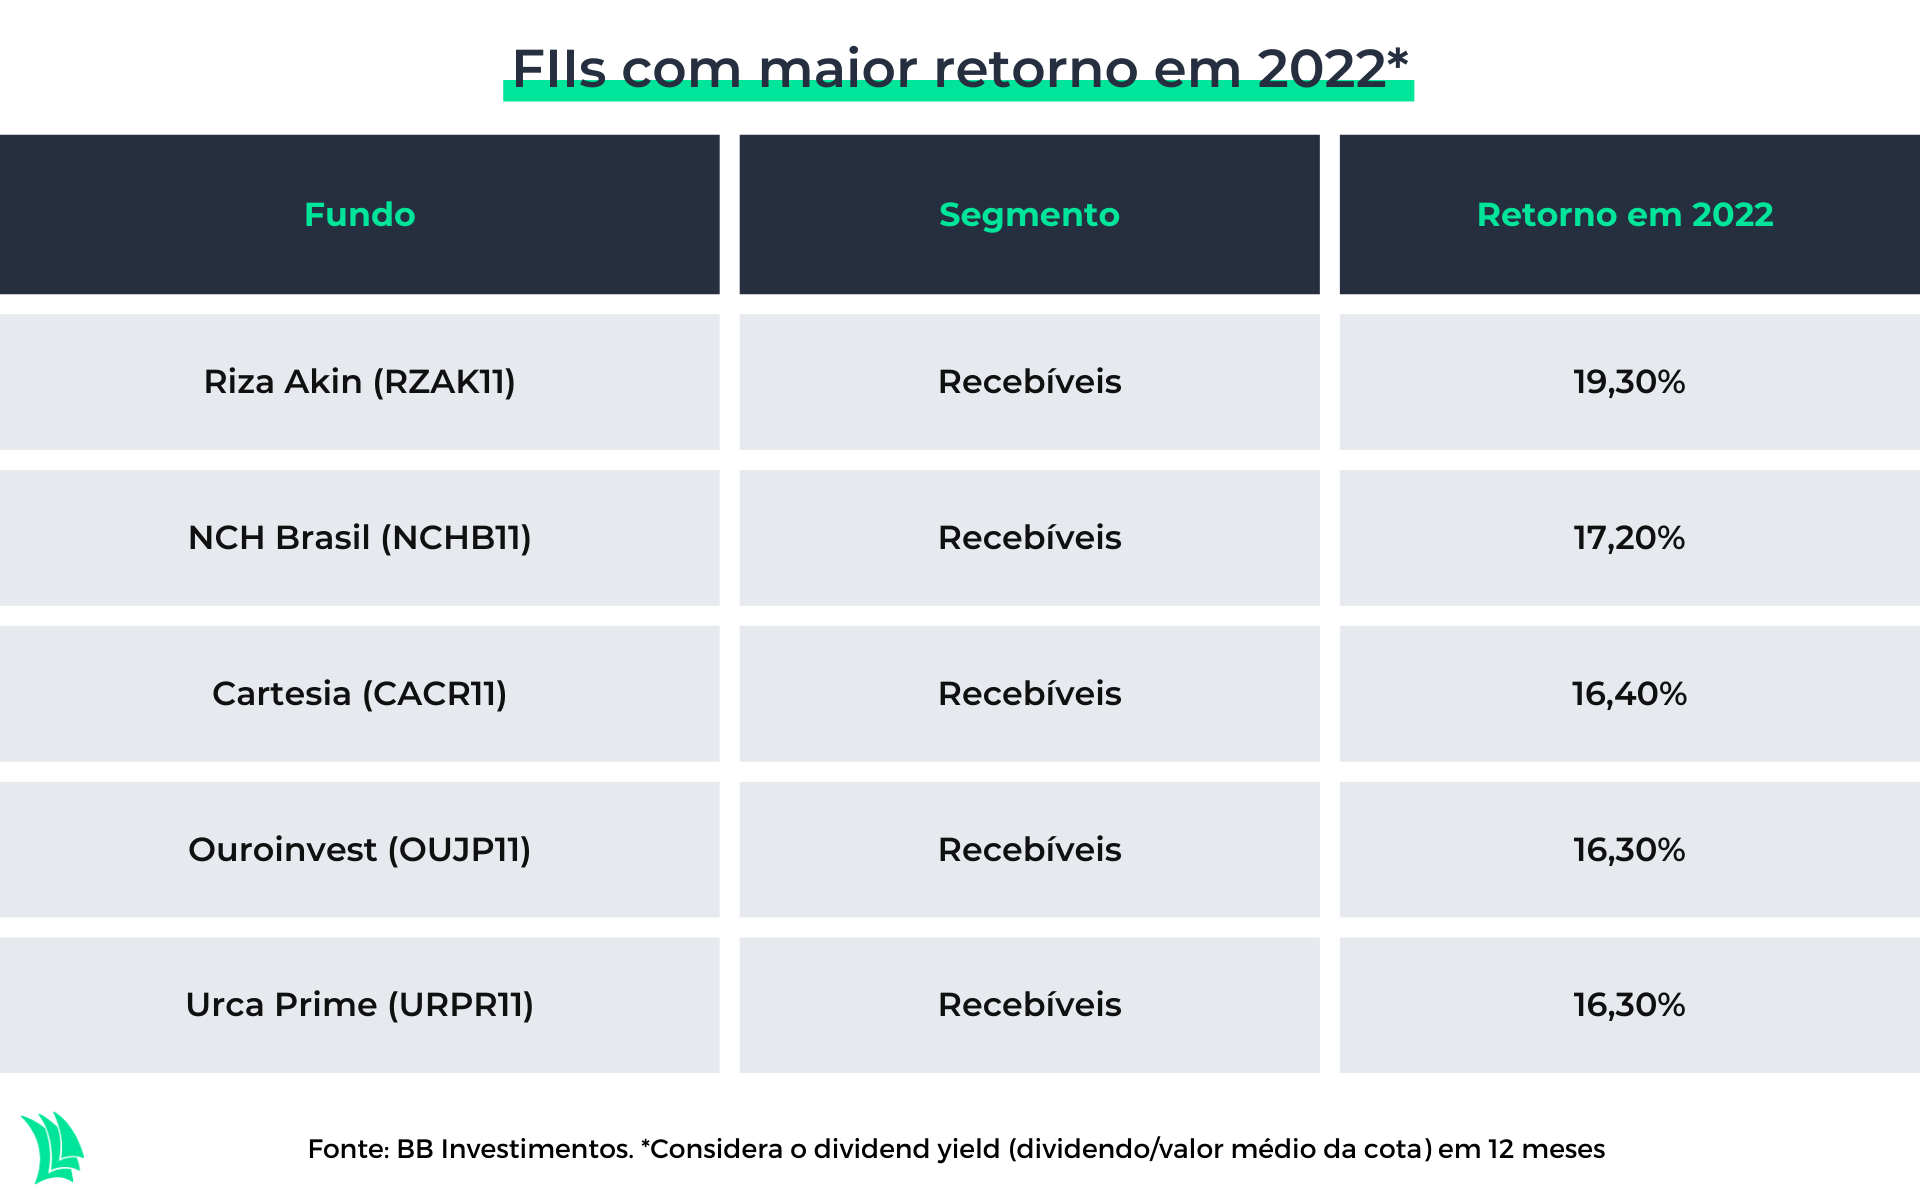 tabela de FIIs com maior retorno em 2022